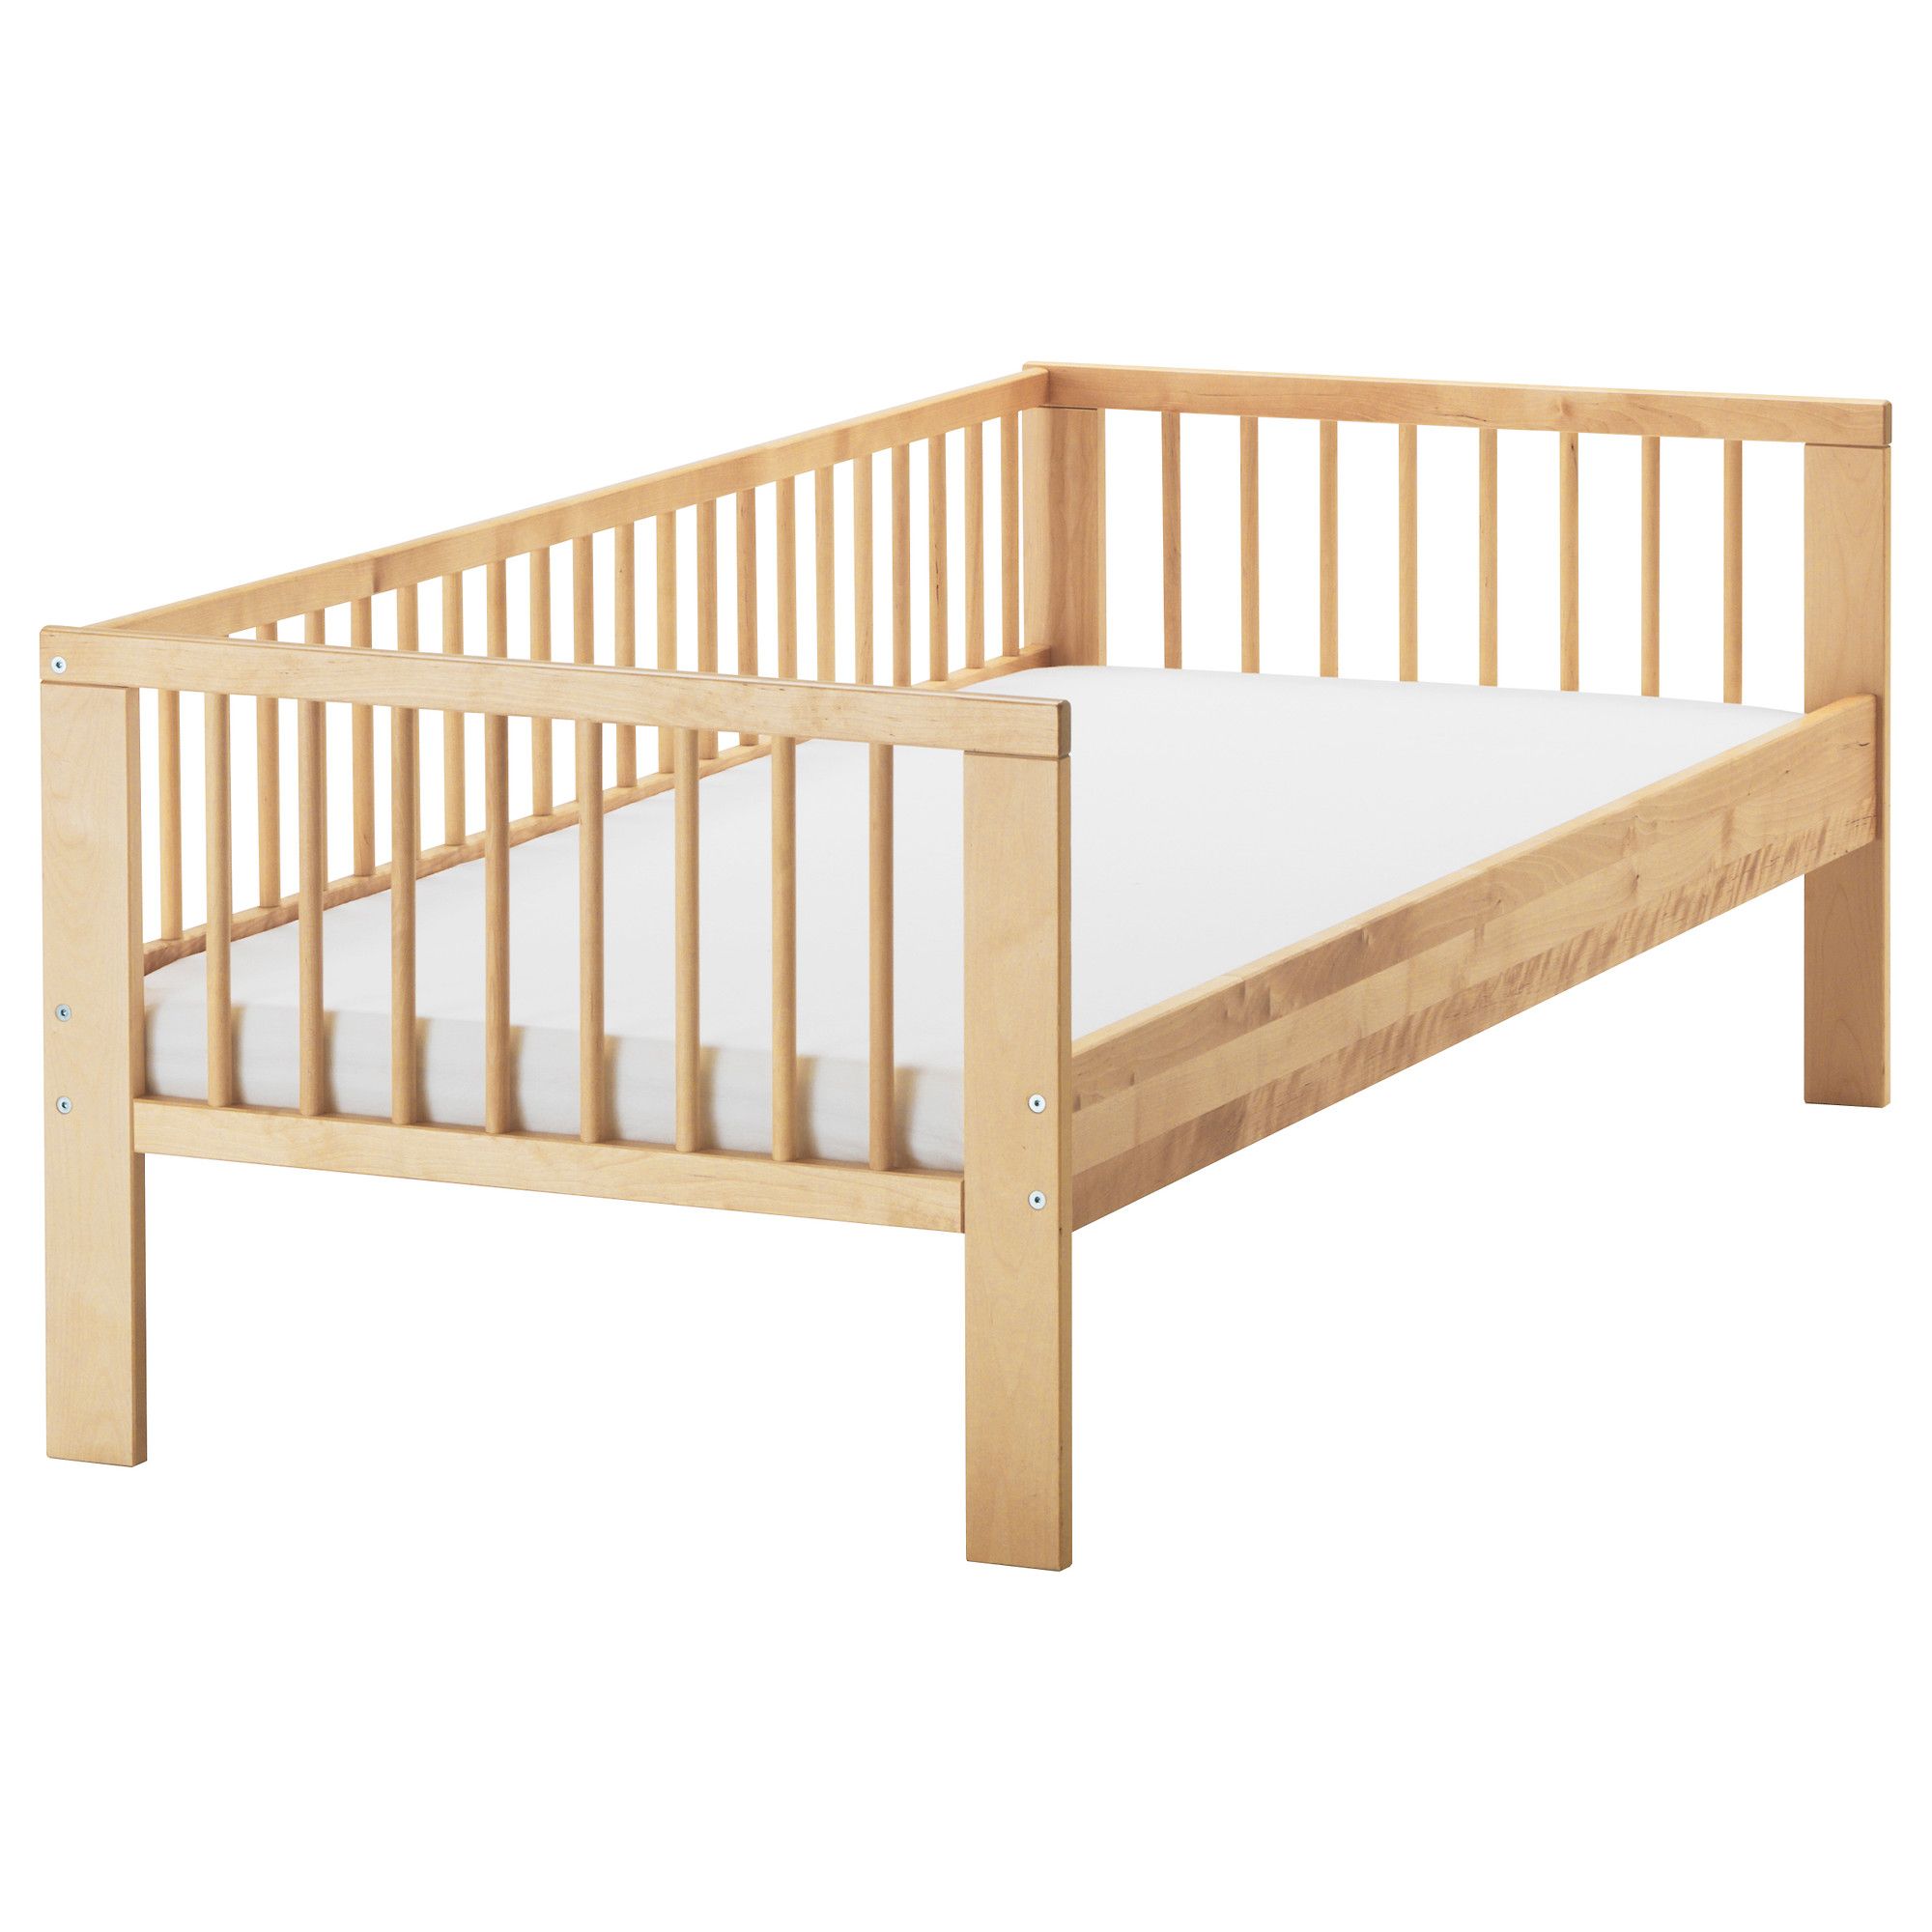 Детская кровать деревянная обычная